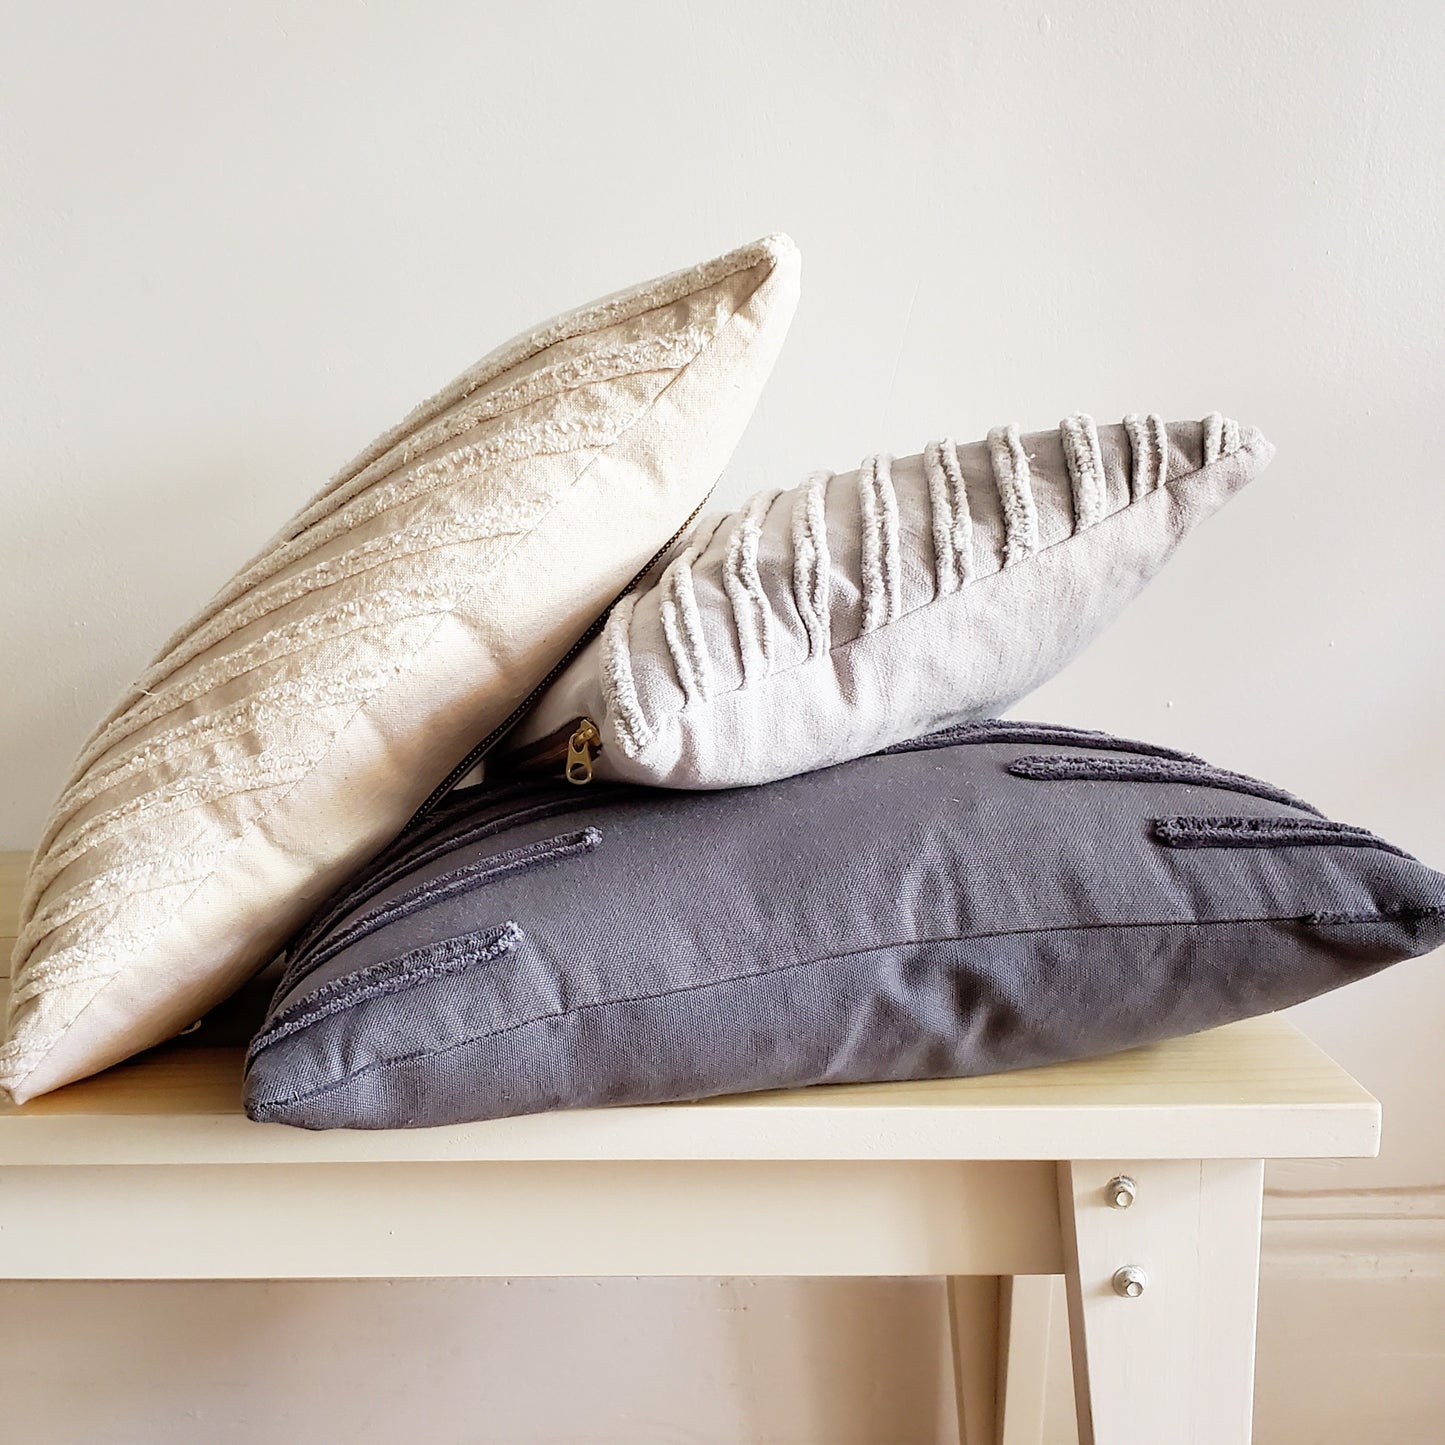 Textured Pillows - Small White